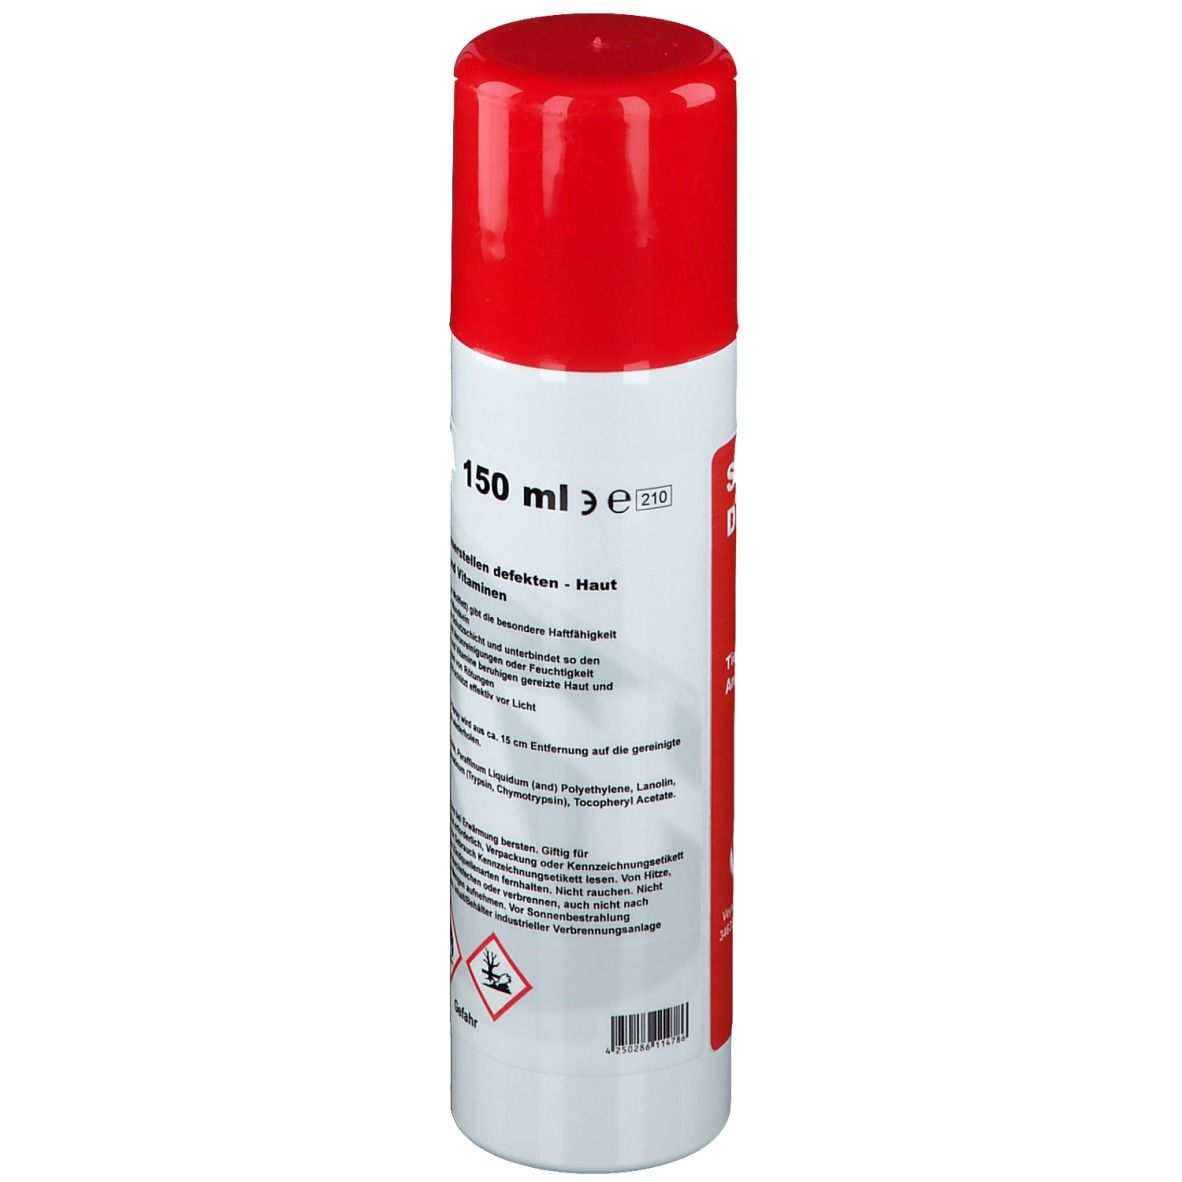 SanDitan® Parazym-Zink Spray